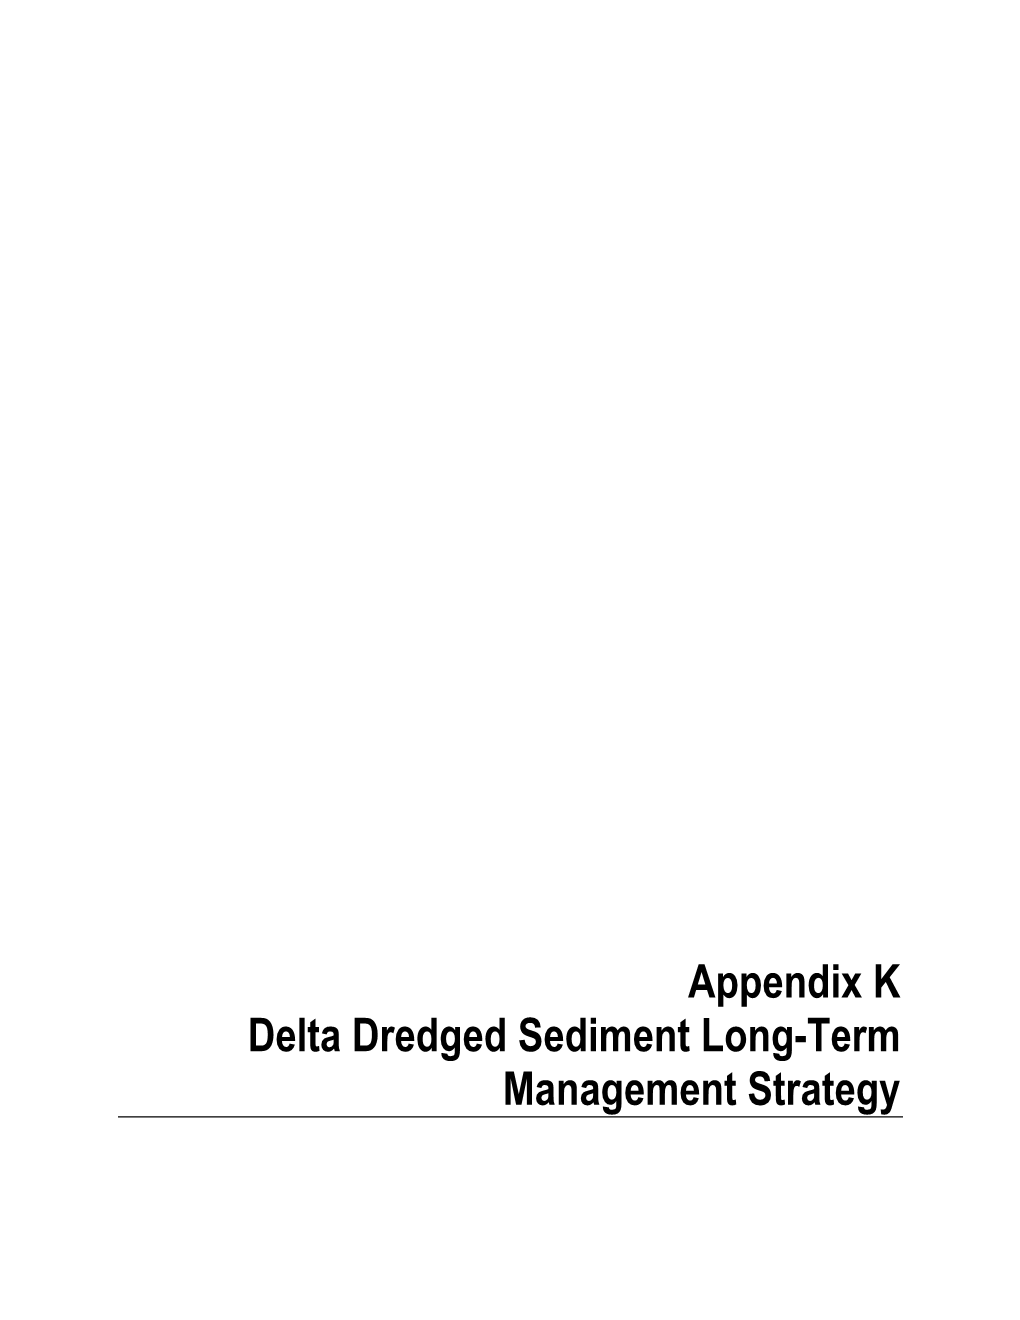 Delta Dredged Sediment Long-Term Management Strategy APPENDIX K – DELTA DREDGED SEDIMENT LONG-TERM MANAGEMENT STRATEGY